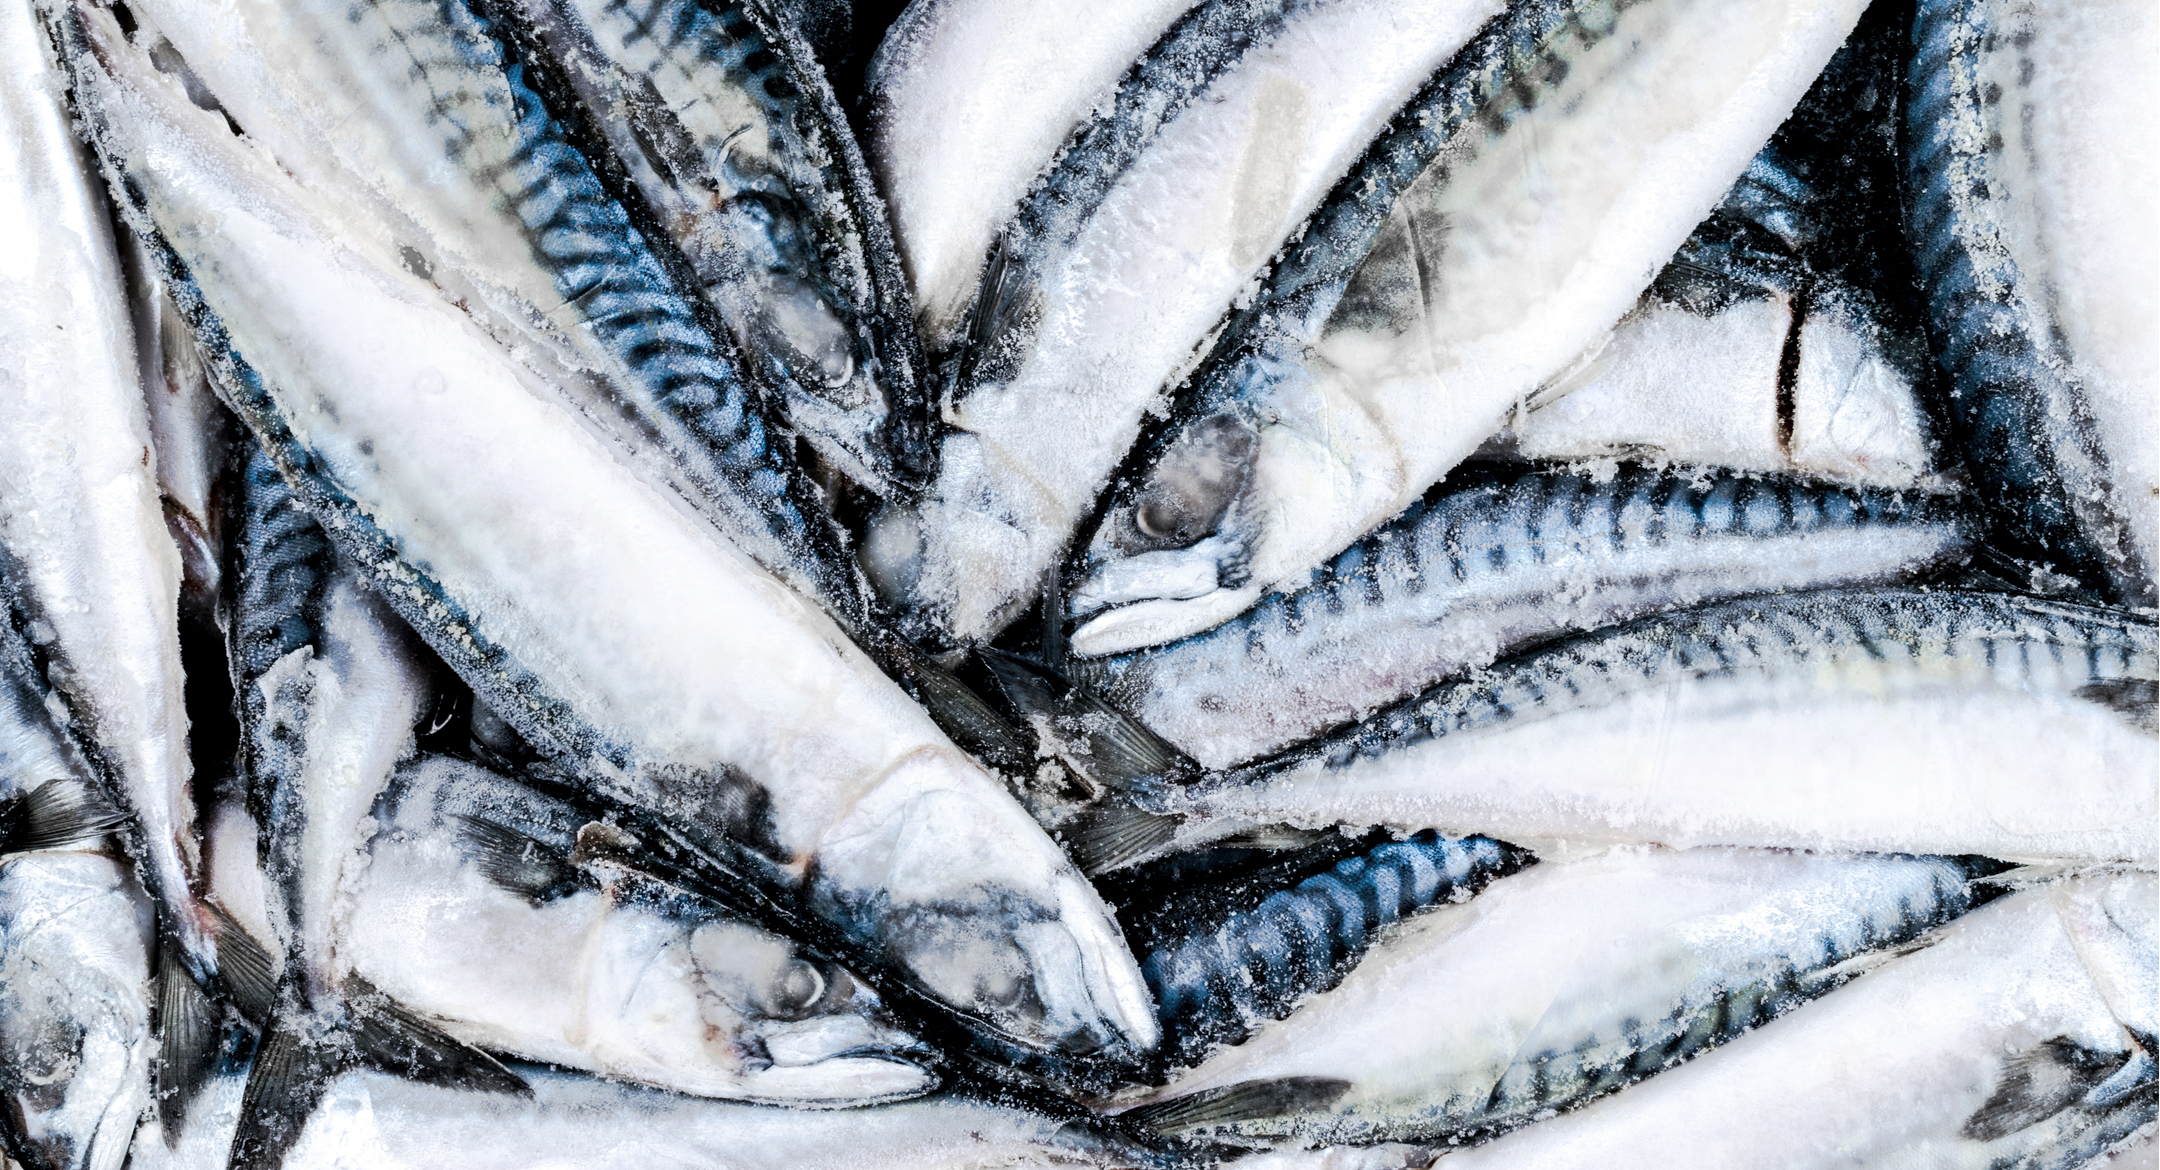  Frozen Atlantic mackerel.  Credit: BigTunaOnline/Shutterstock.com